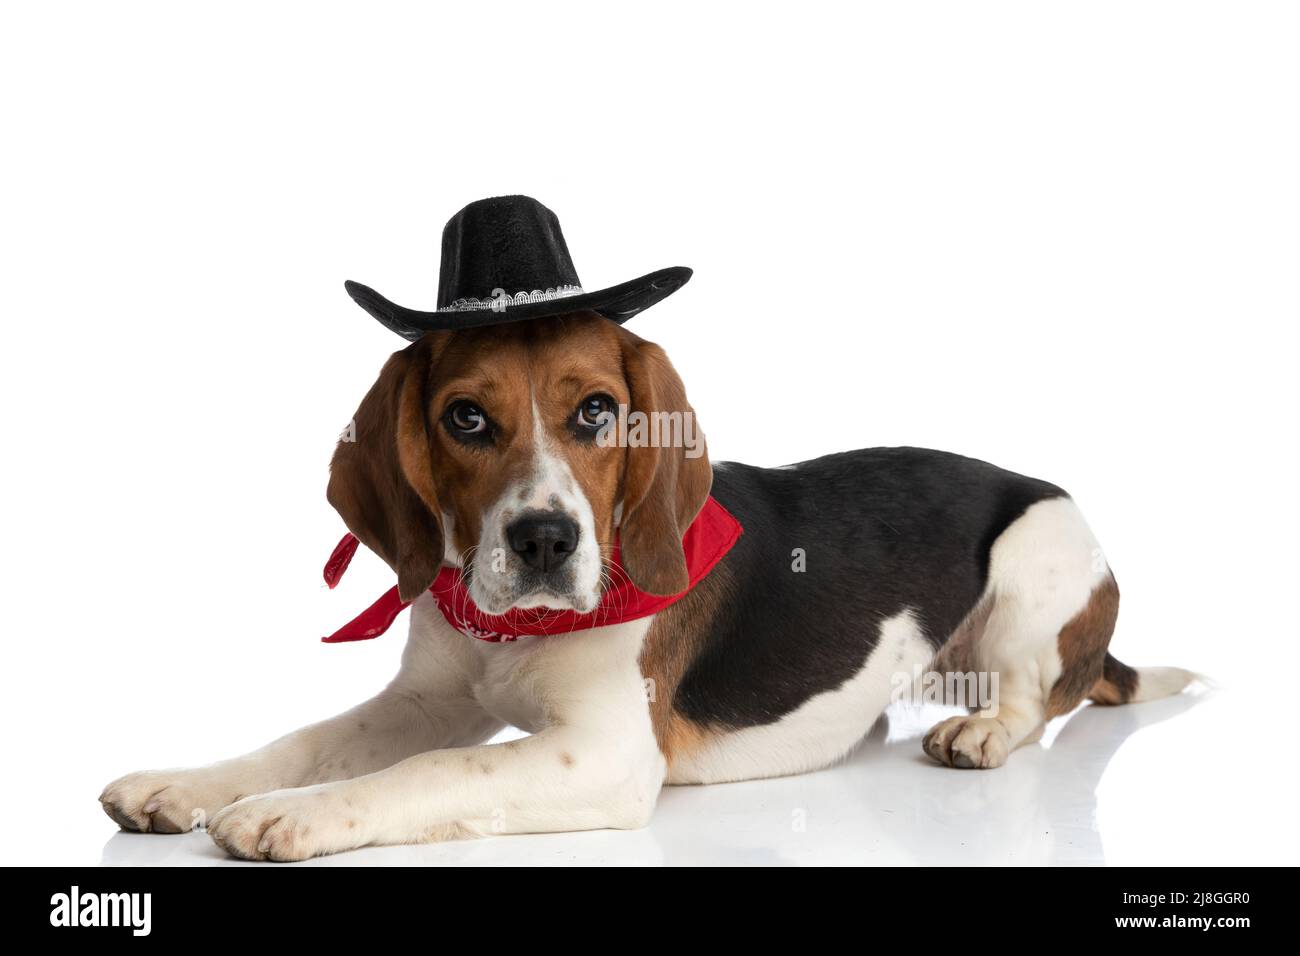 vista laterale di un piccolo cane beagle che indossa un cappello nero e bandana rossa come un boss su sfondo bianco Foto Stock